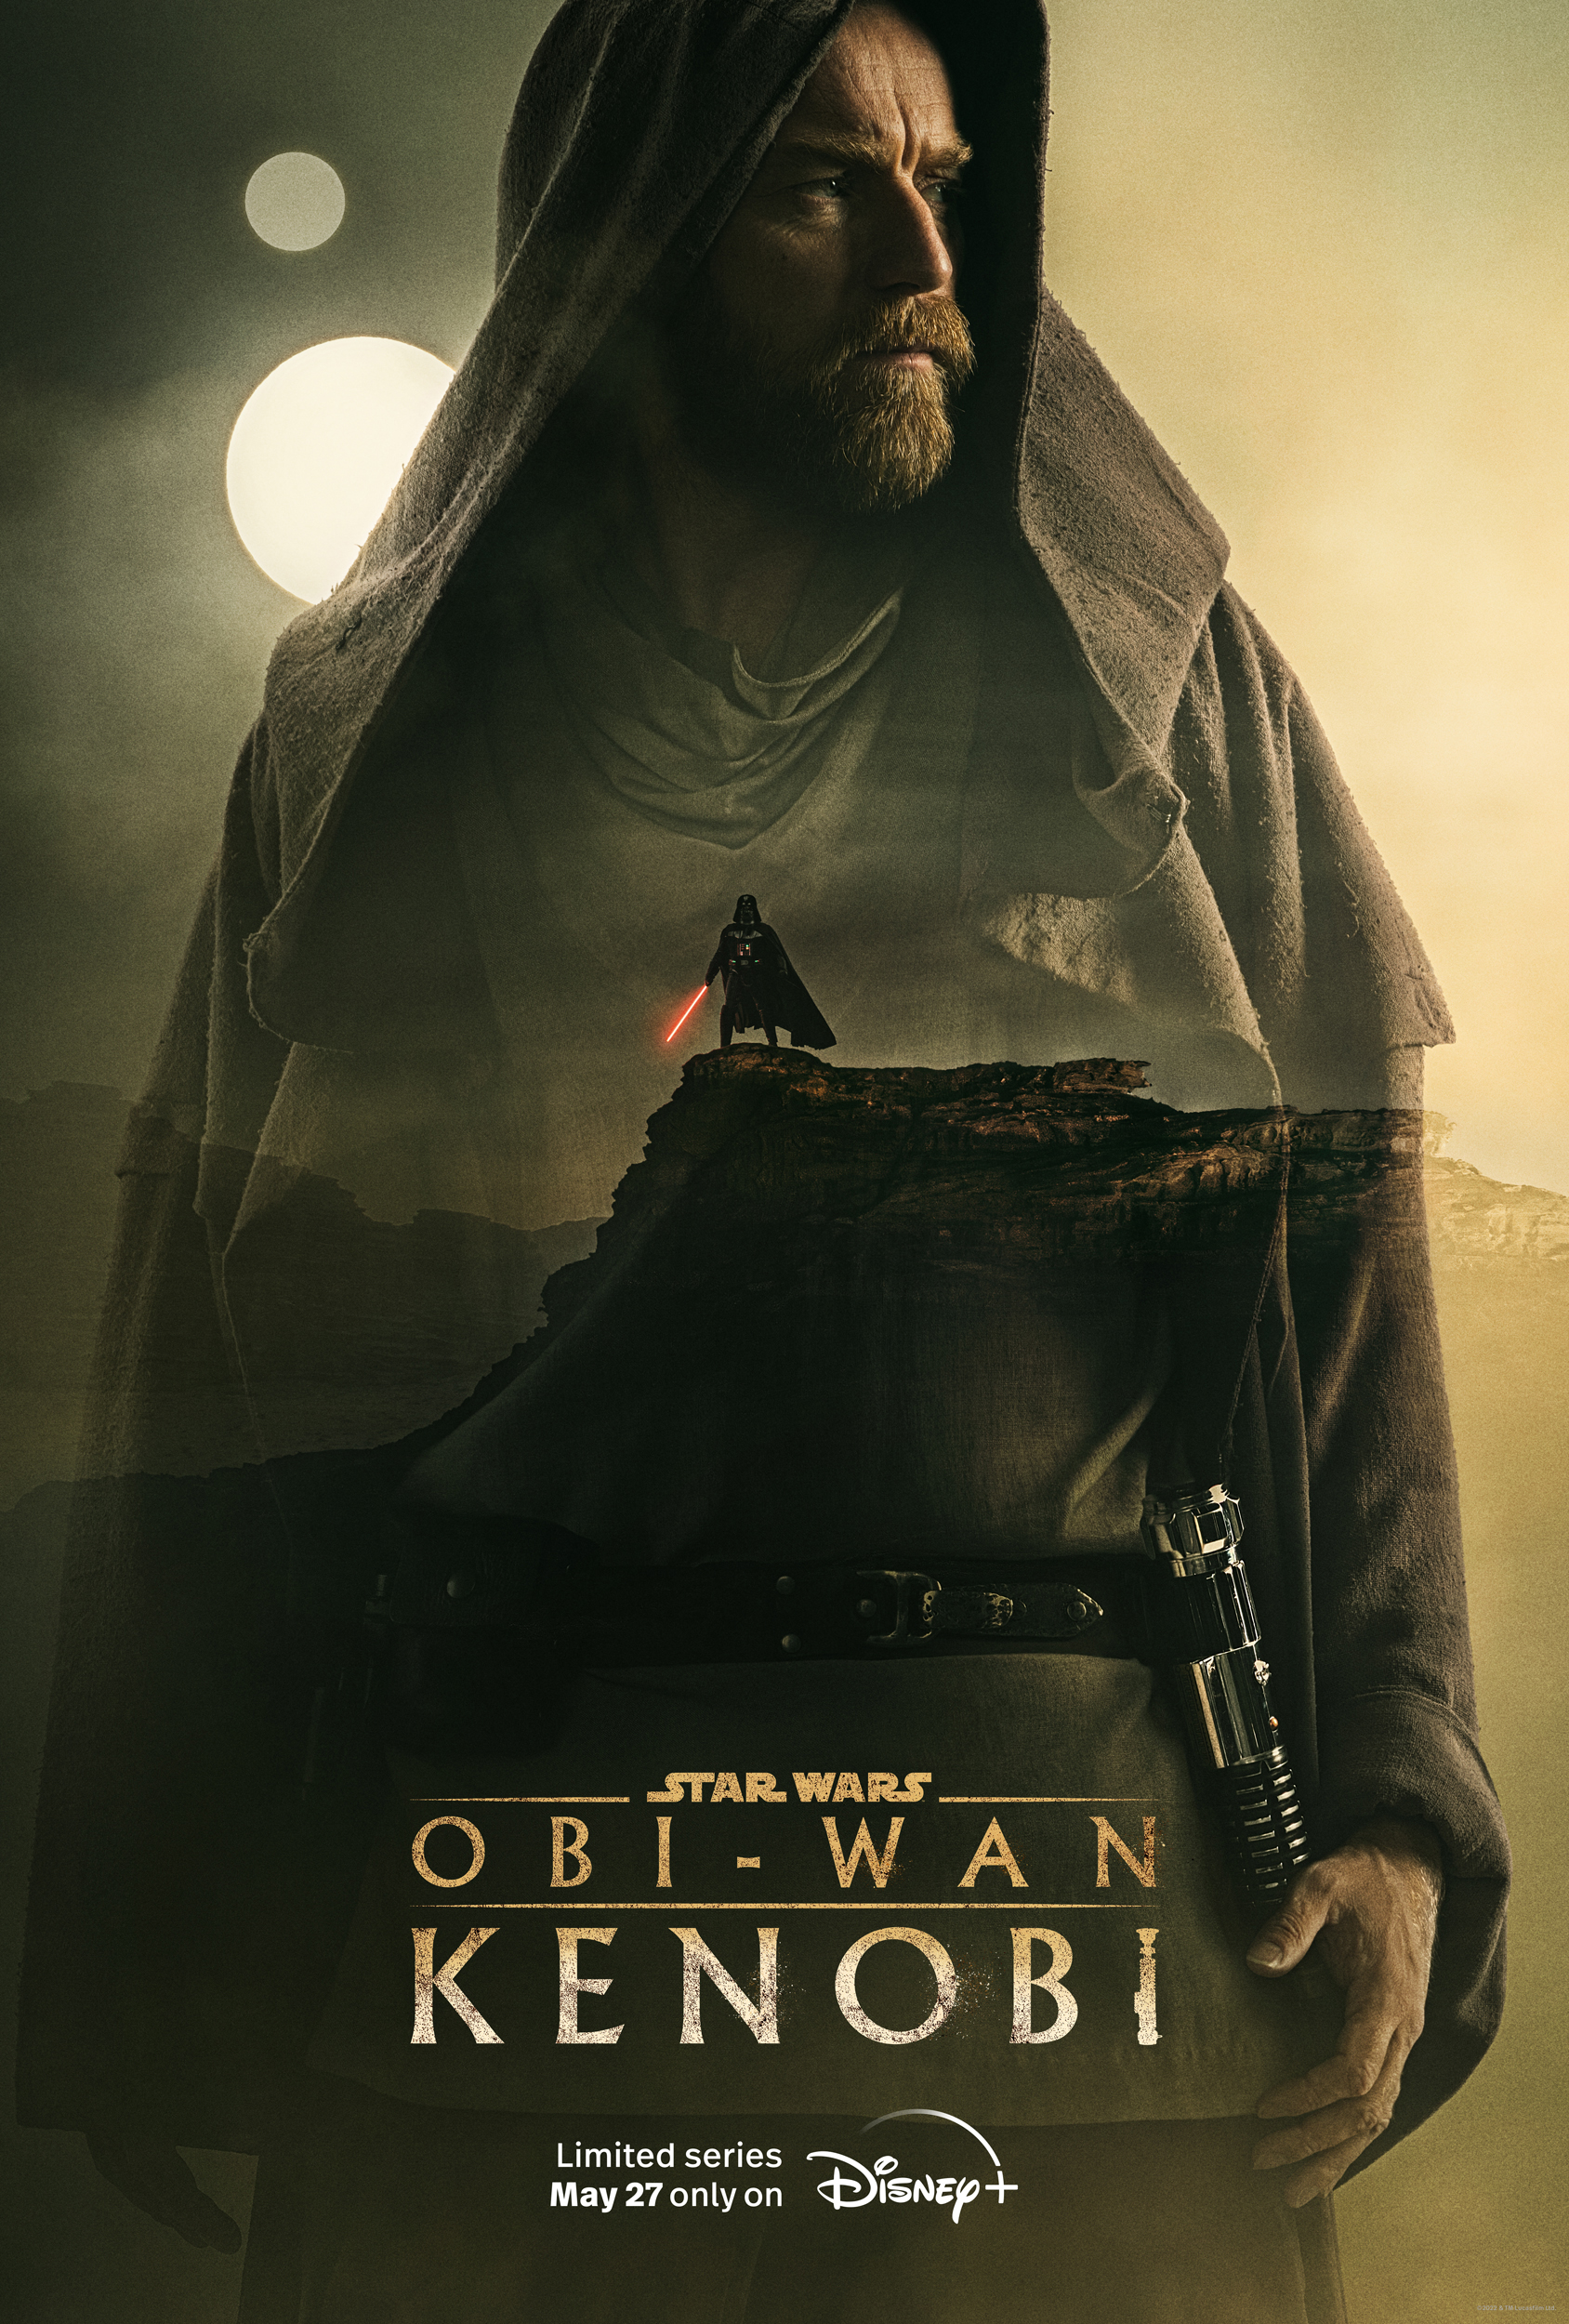 What is Star Wars: Obi-Wan Kenobi release date?